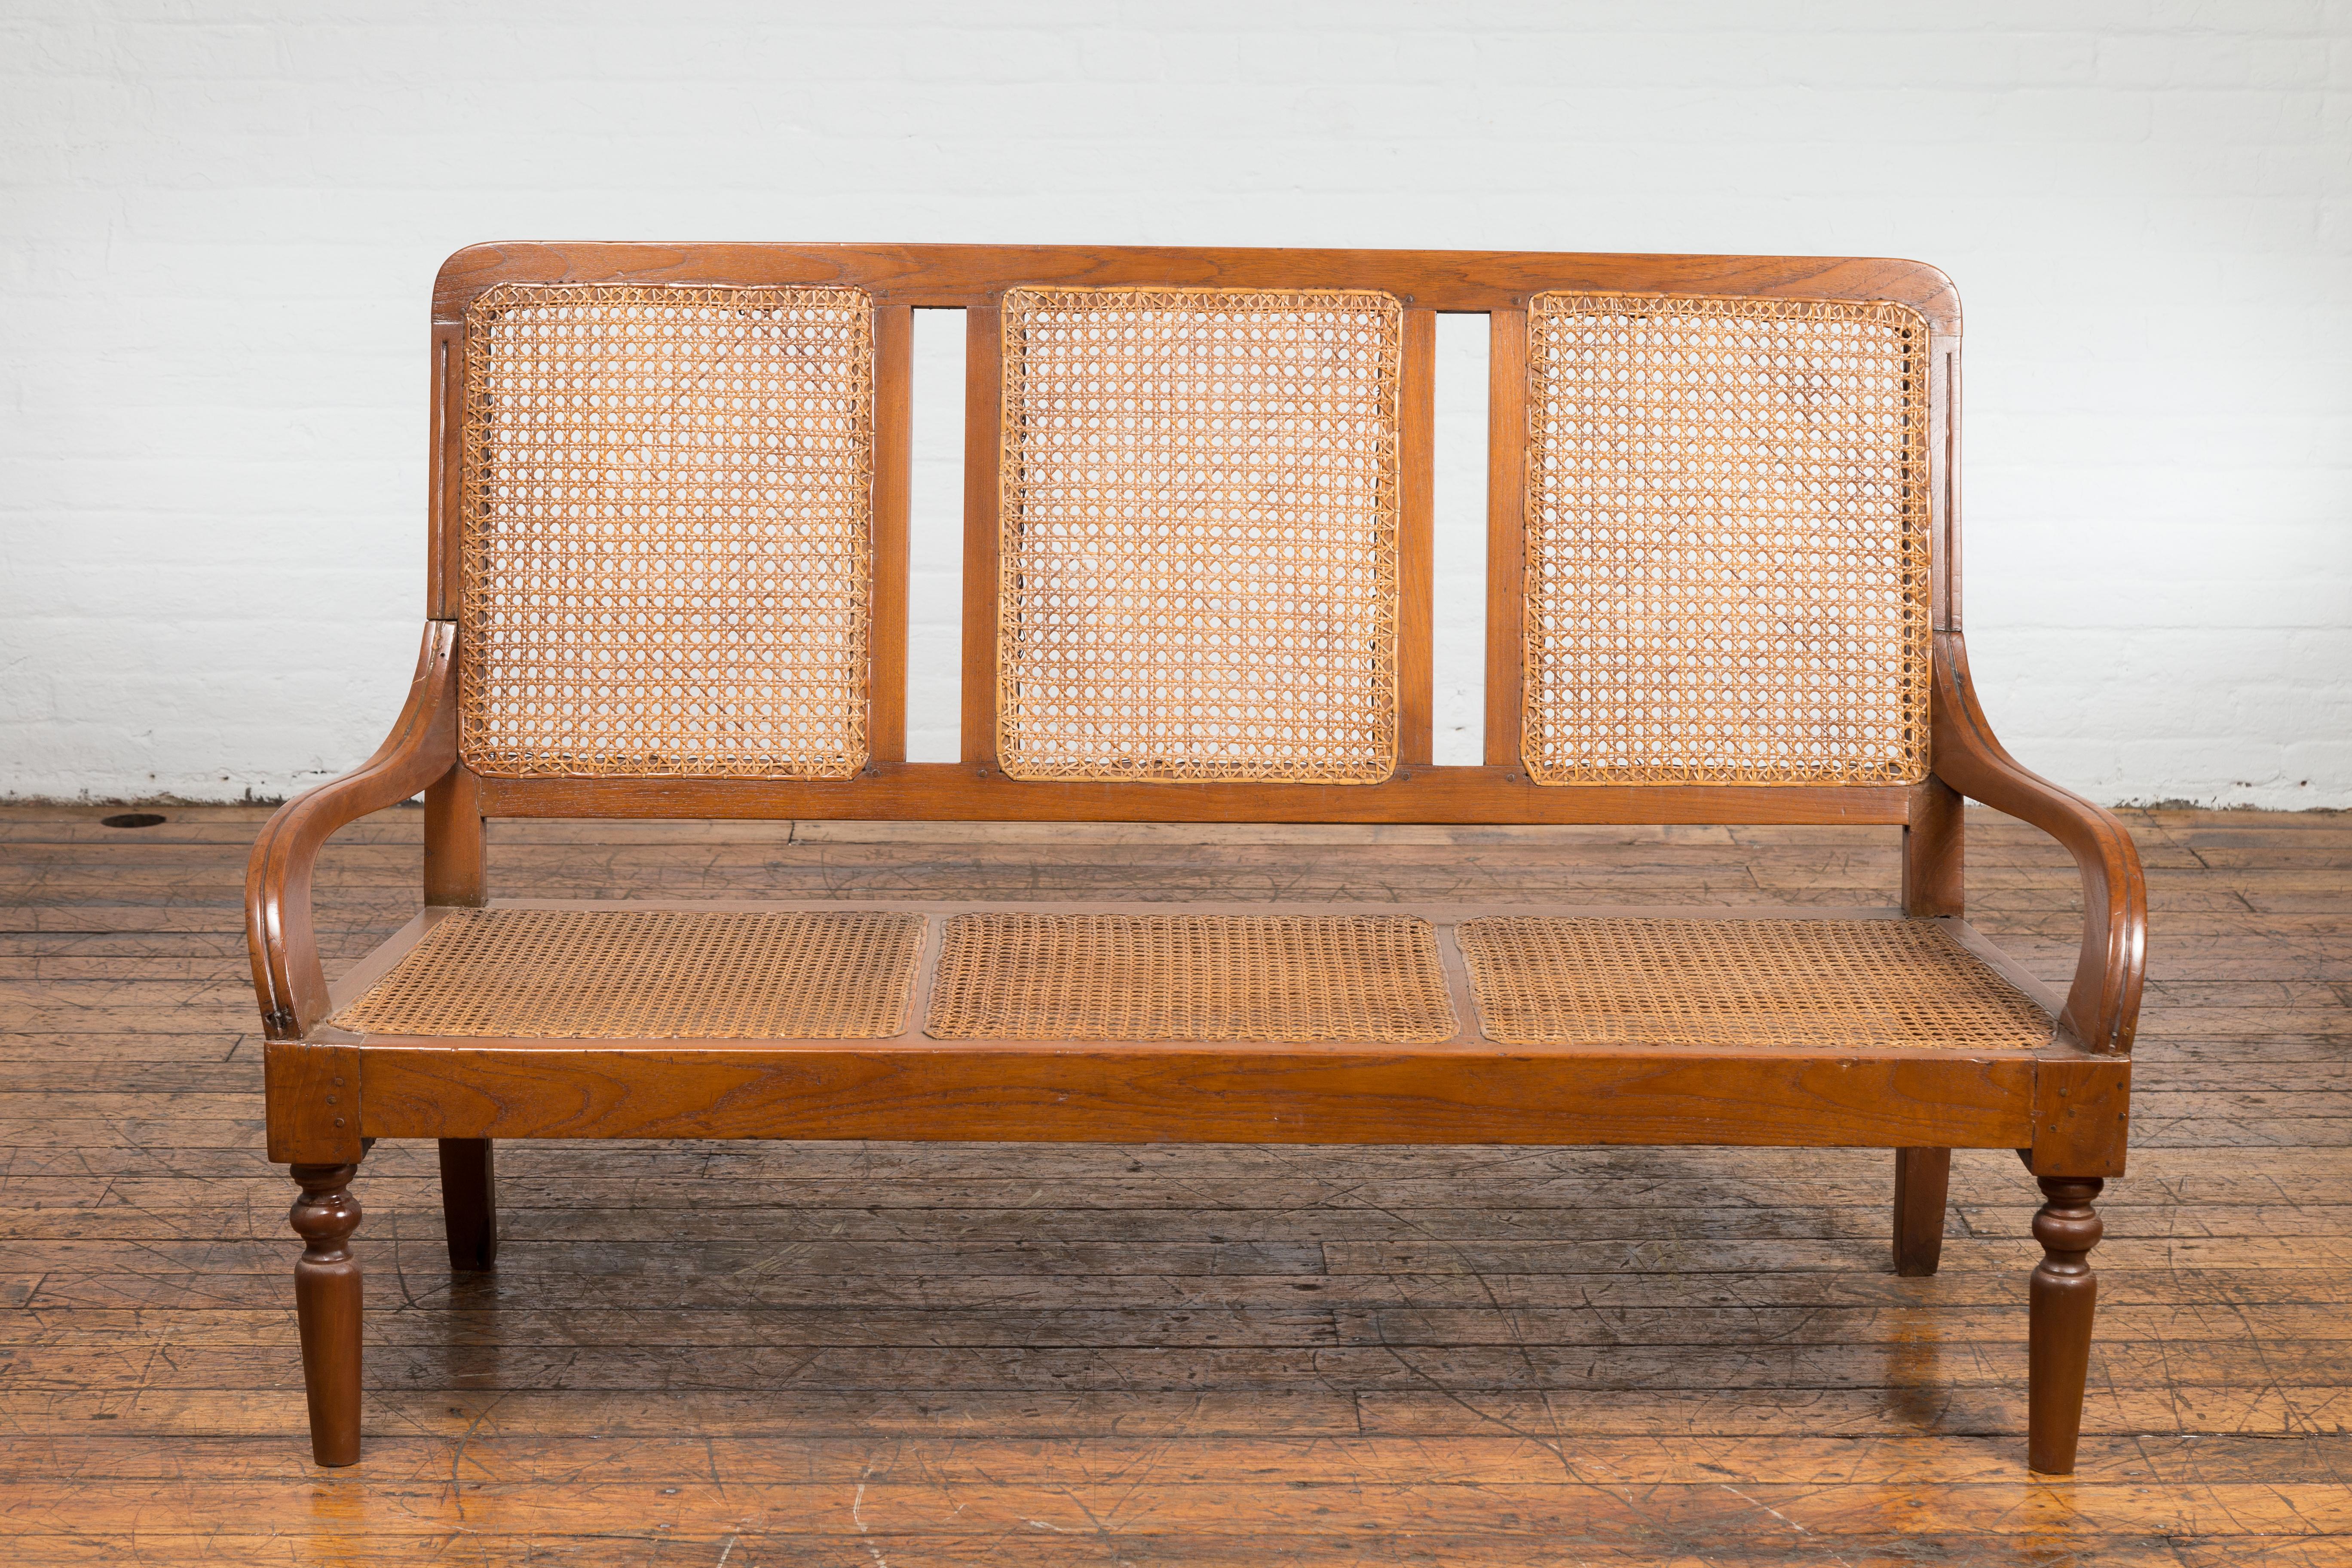 Eine rustikale, dreisitzige Couch aus javanischem Teakholz aus der Jahrhundertwende mit Sitz und Rückenlehne aus geflochtenem Rattan. Dieses dreisitzige Sofa aus javanischem Teakholz aus der Jahrhundertwende um 1900 versprüht einen Hauch von